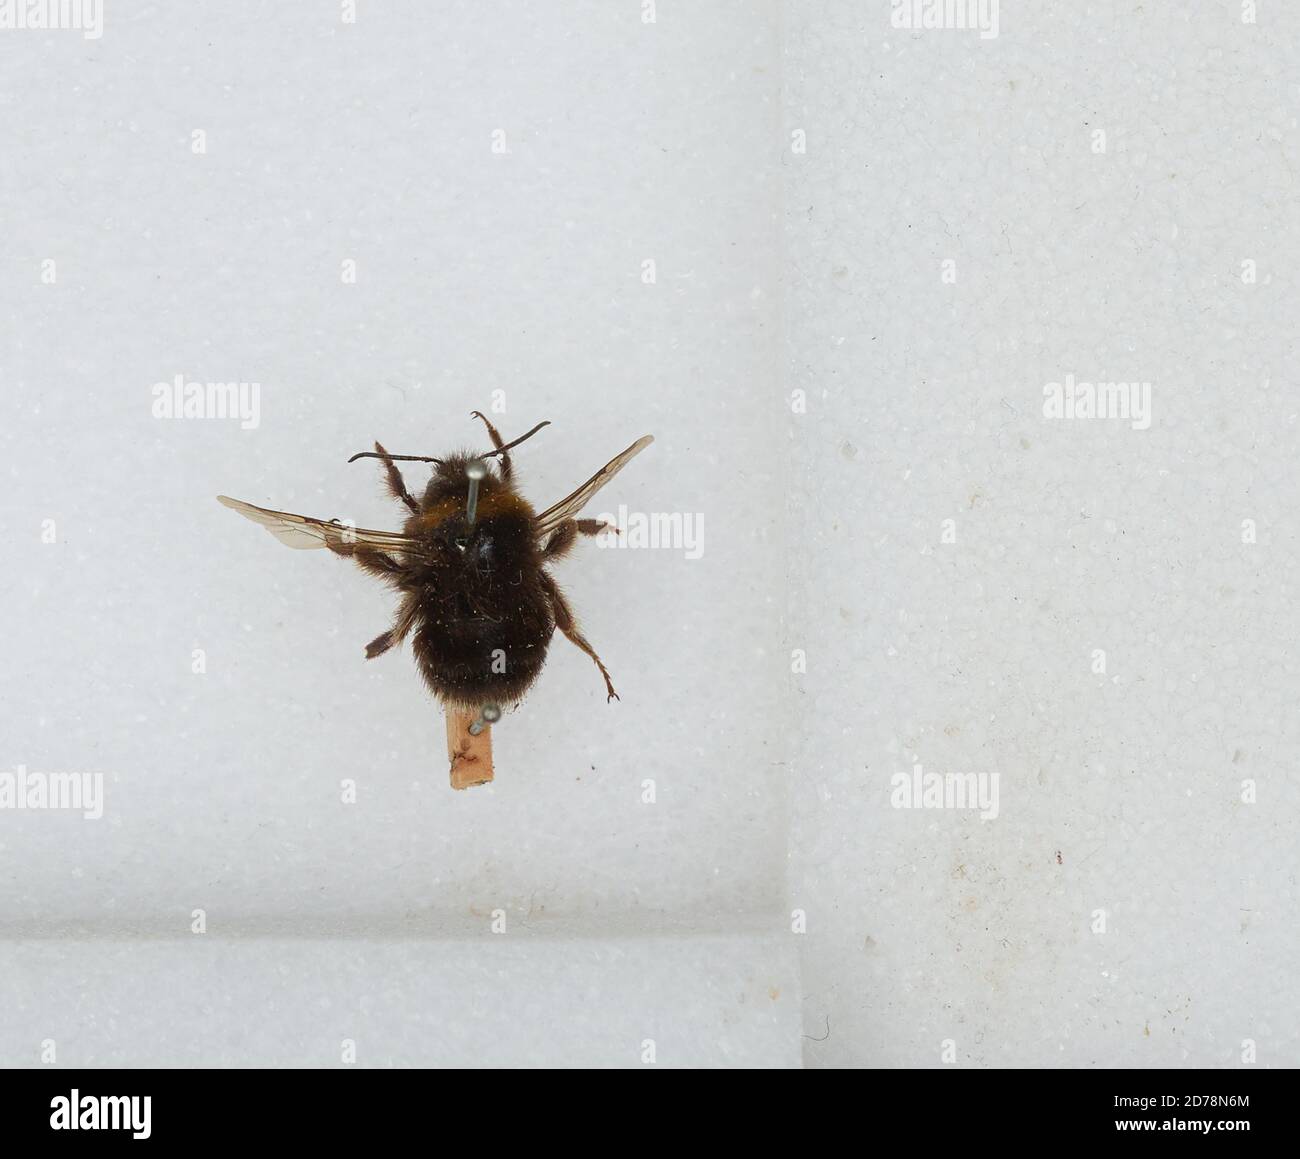 Bombus (Subterraneobombus) subterraneus (Linnaeus), Animalia, Arthropoda, Insecta, Hymenoptera, Apidae, Apinae Stock Photo